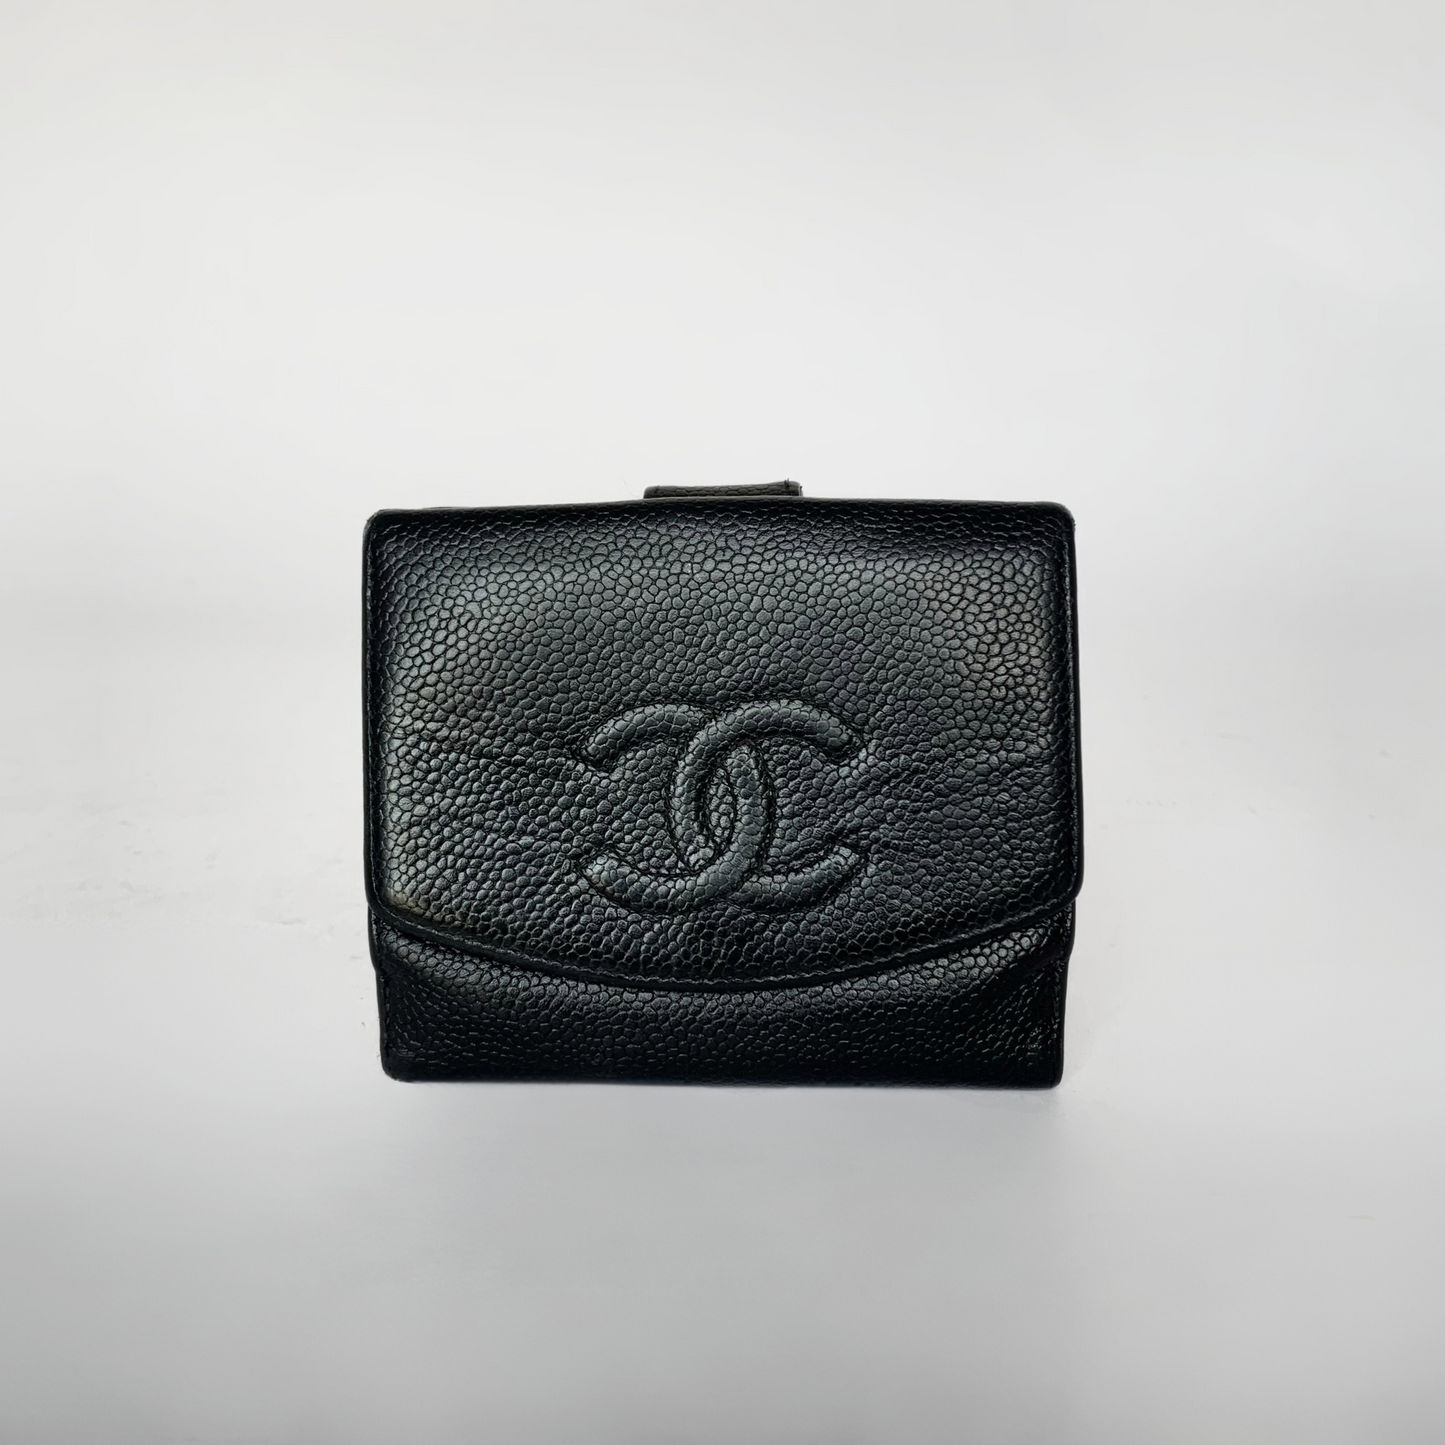 Chanel Chanel Cartera CC Pequeña Piel Caviar - Carteras - Etoile Luxury Vintage